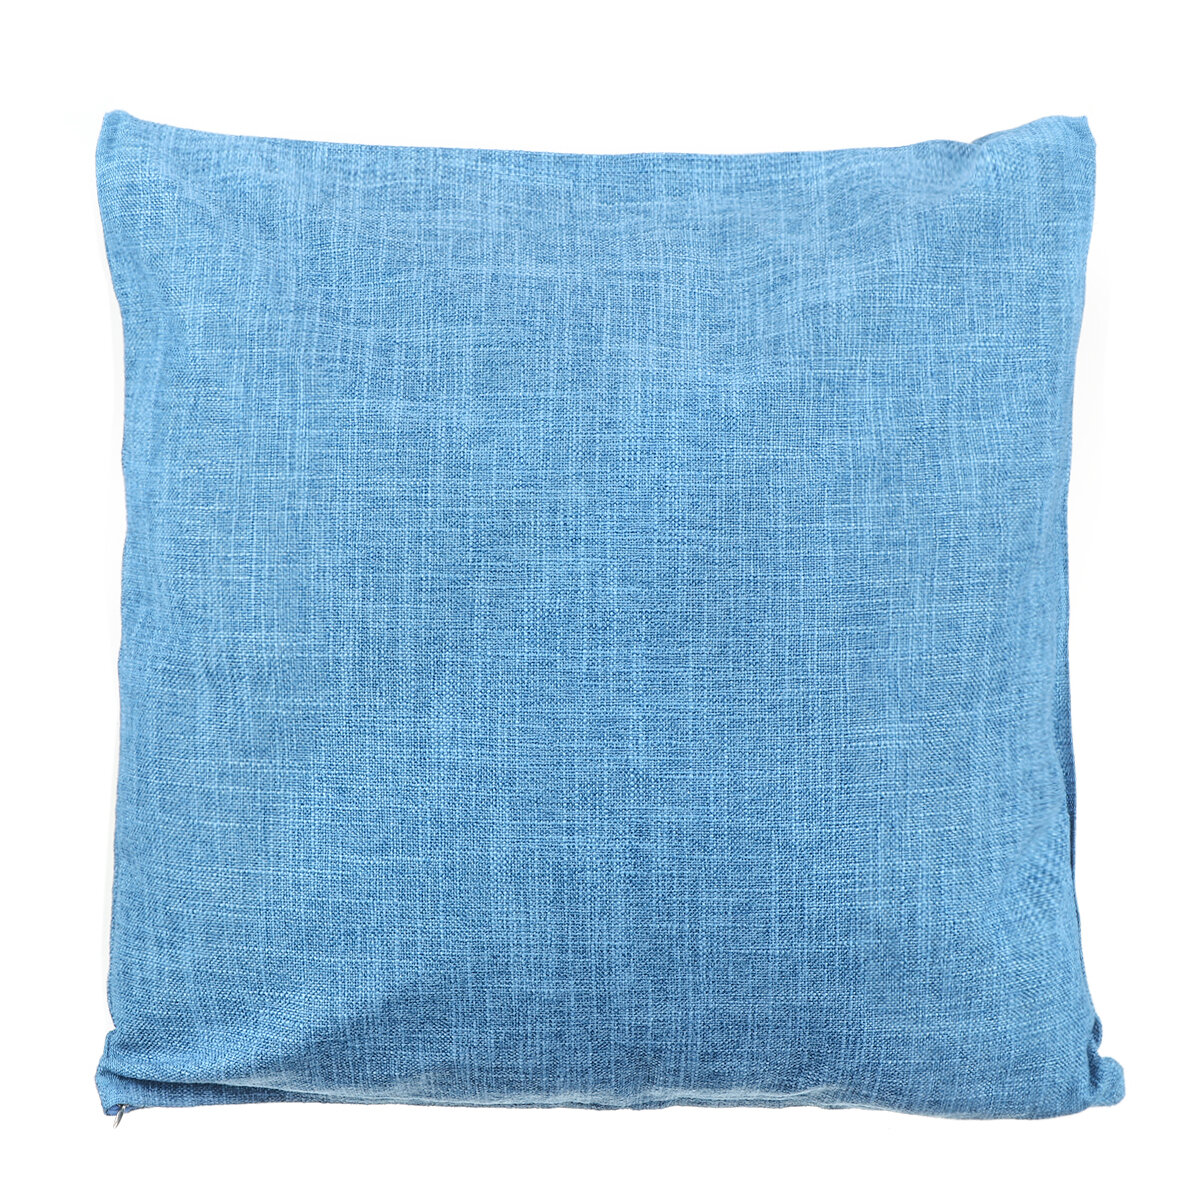 Cushion Cover Cotton Linen Sofa Car Home Waist Pillow Case Protector Decor 18''